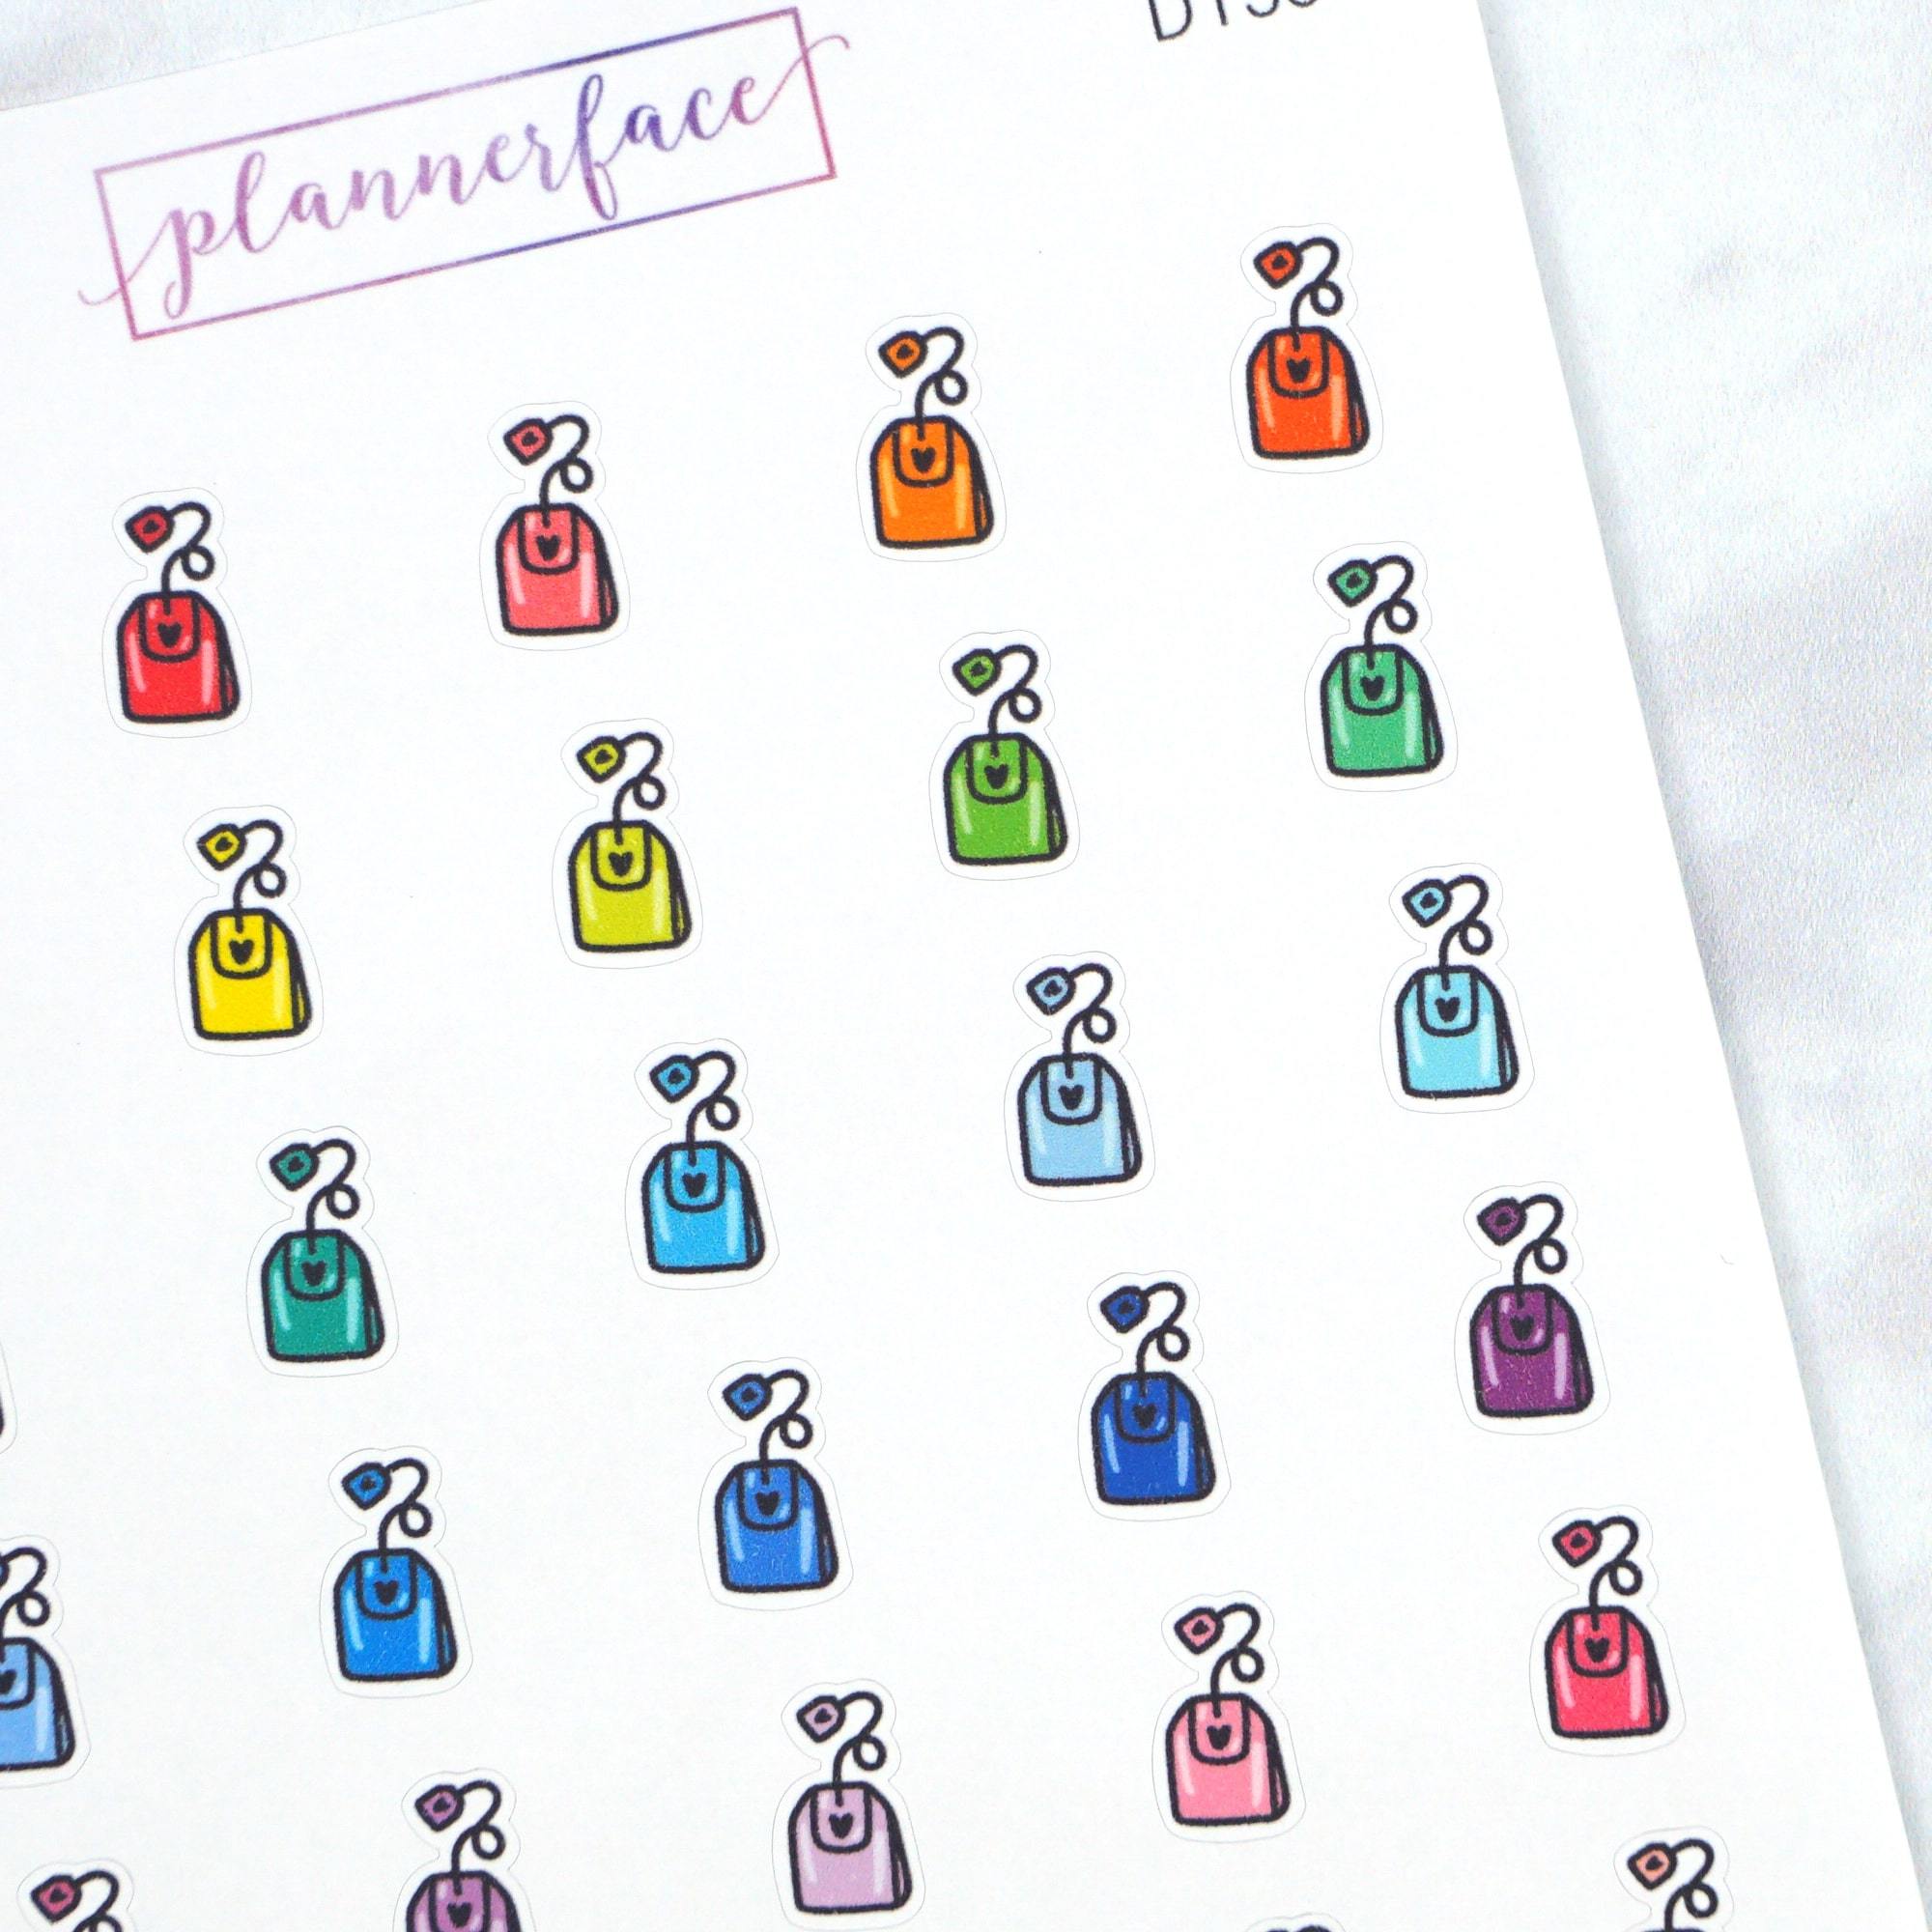 Tea Bag Multicolour Doodles by Plannerface